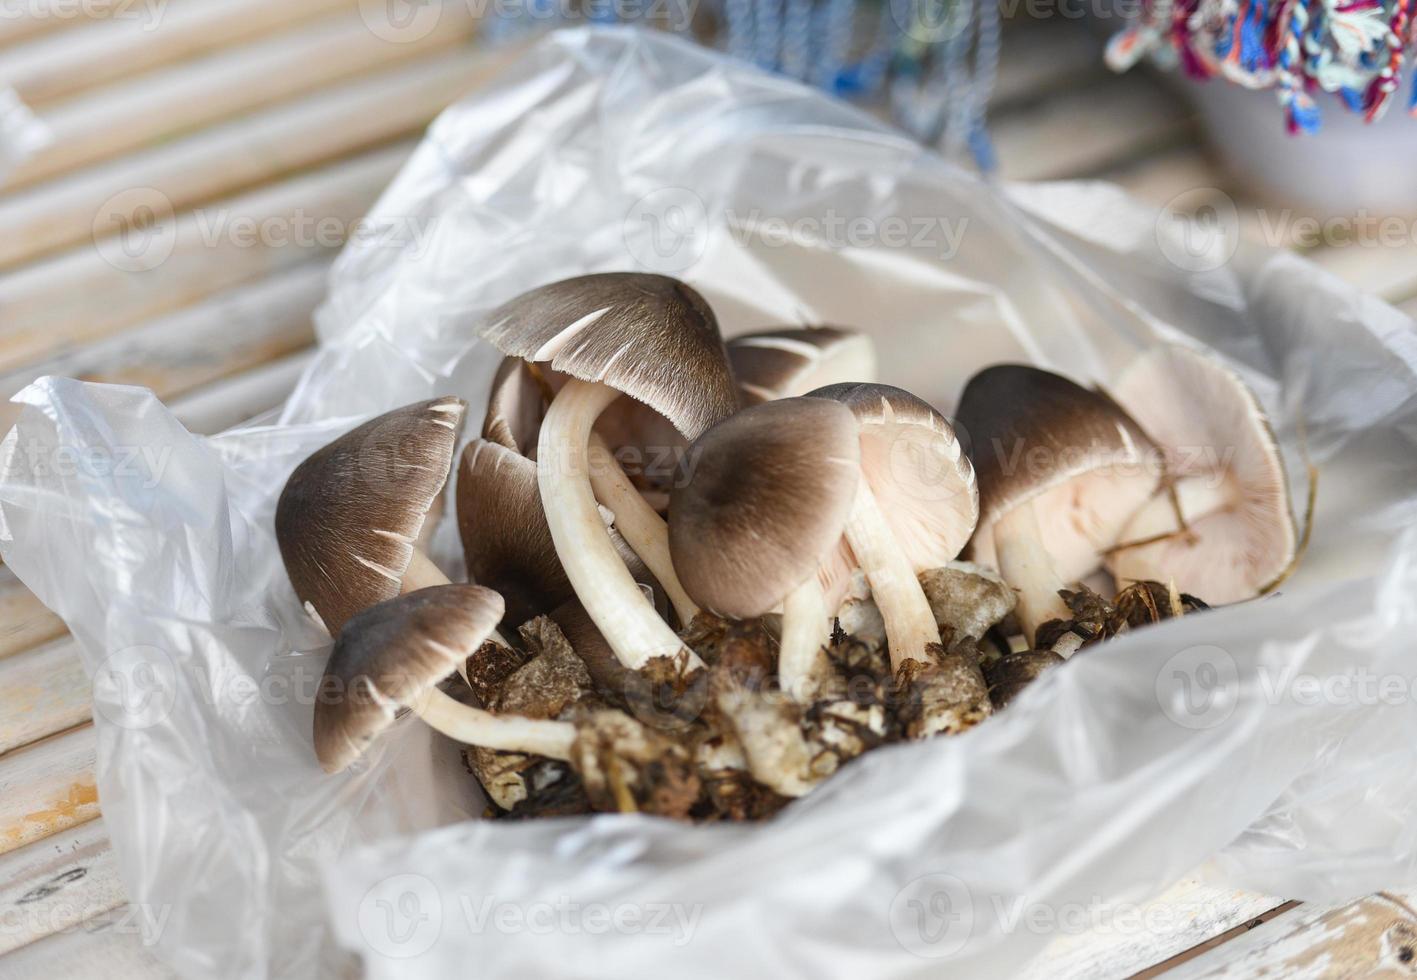 funghi marroni raccolti dalla foresta naturale - funghi selvatici foto